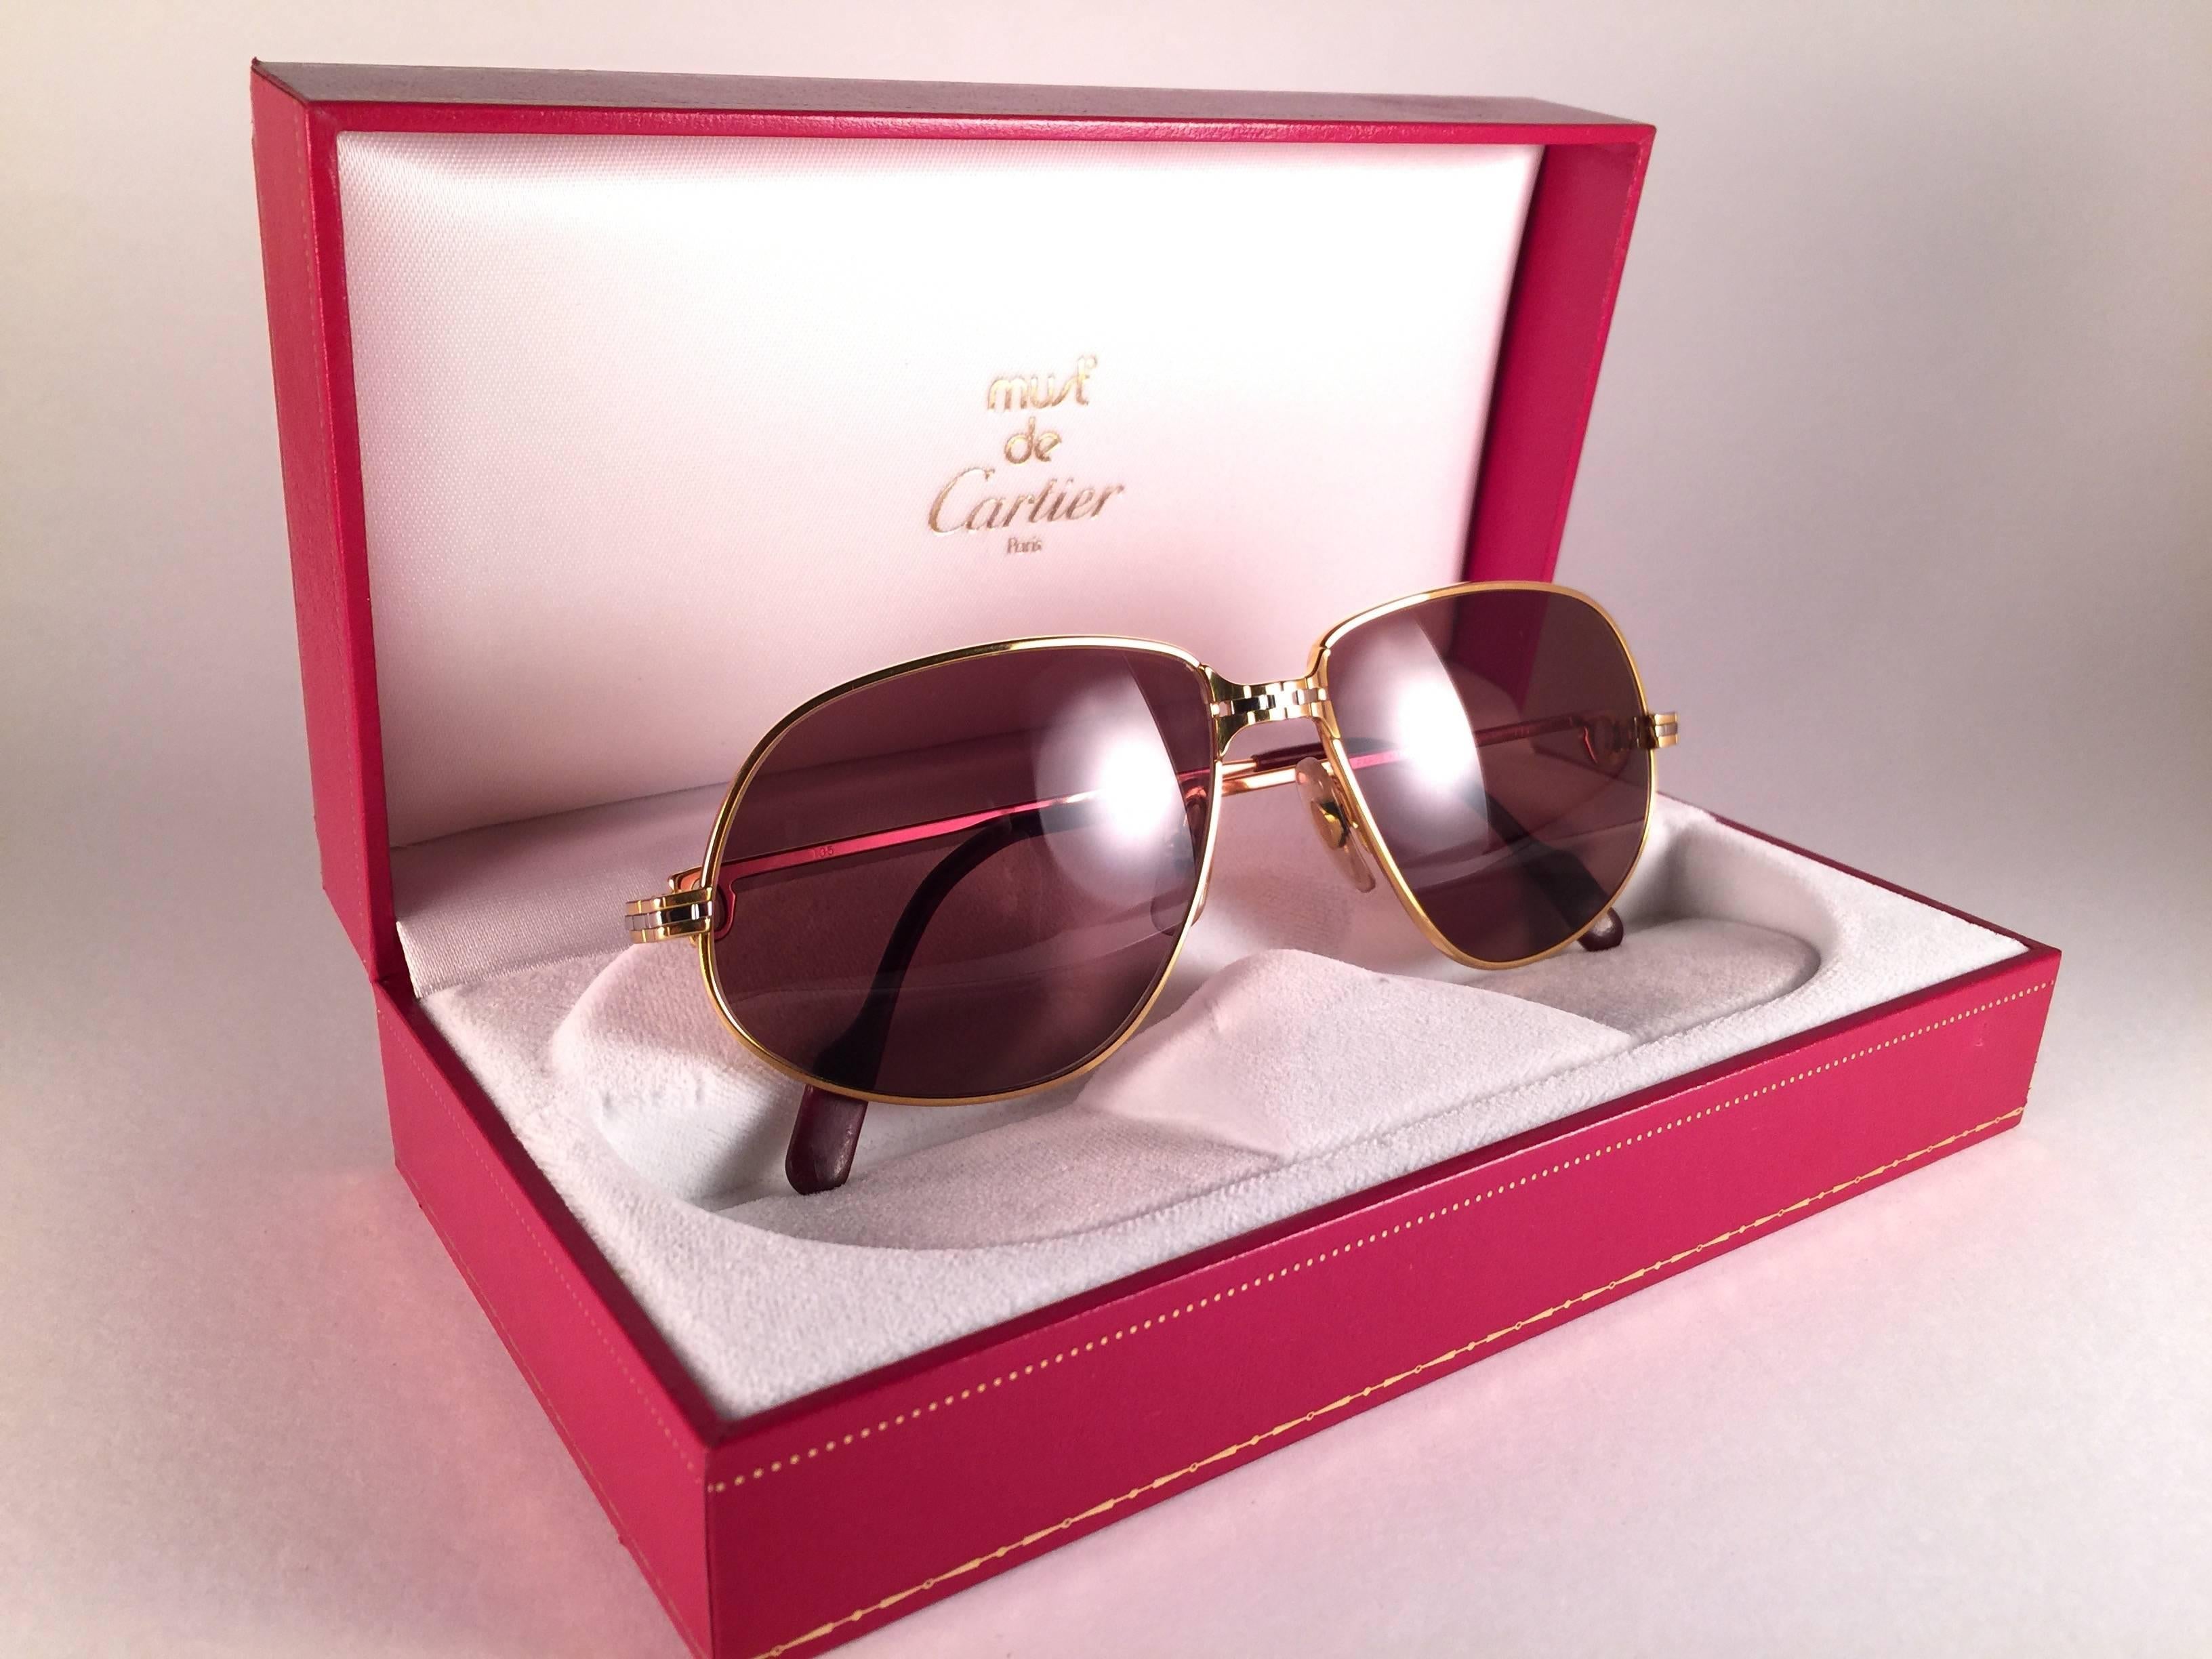 New 1988 Cartier Panthere Sonnenbrille mit braunen (uv-Schutz) Gläsern.  Der Rahmen ist mit der Vorderseite und den Seiten in Gelb- und Weißgold. Alle Punzierungen. burgunderfarbene Ohrpolster. 
Beide Arme tragen das C von Cartier auf der Schläfe.